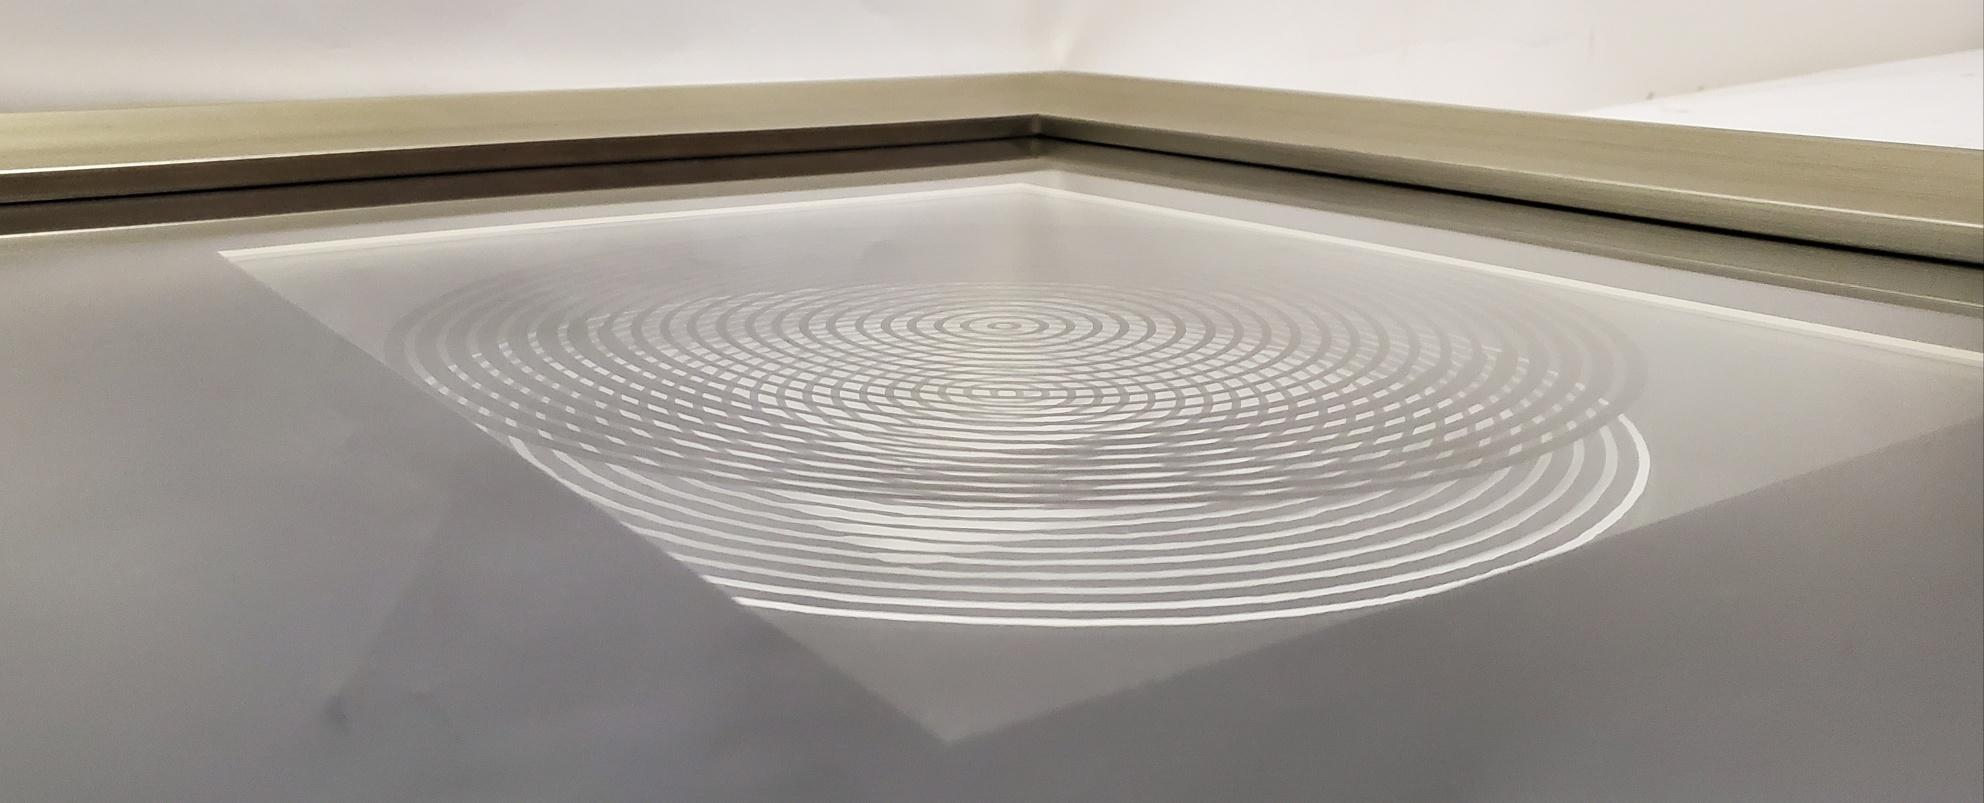 20th Century Victor Vasarely Original Optical Illusion Art